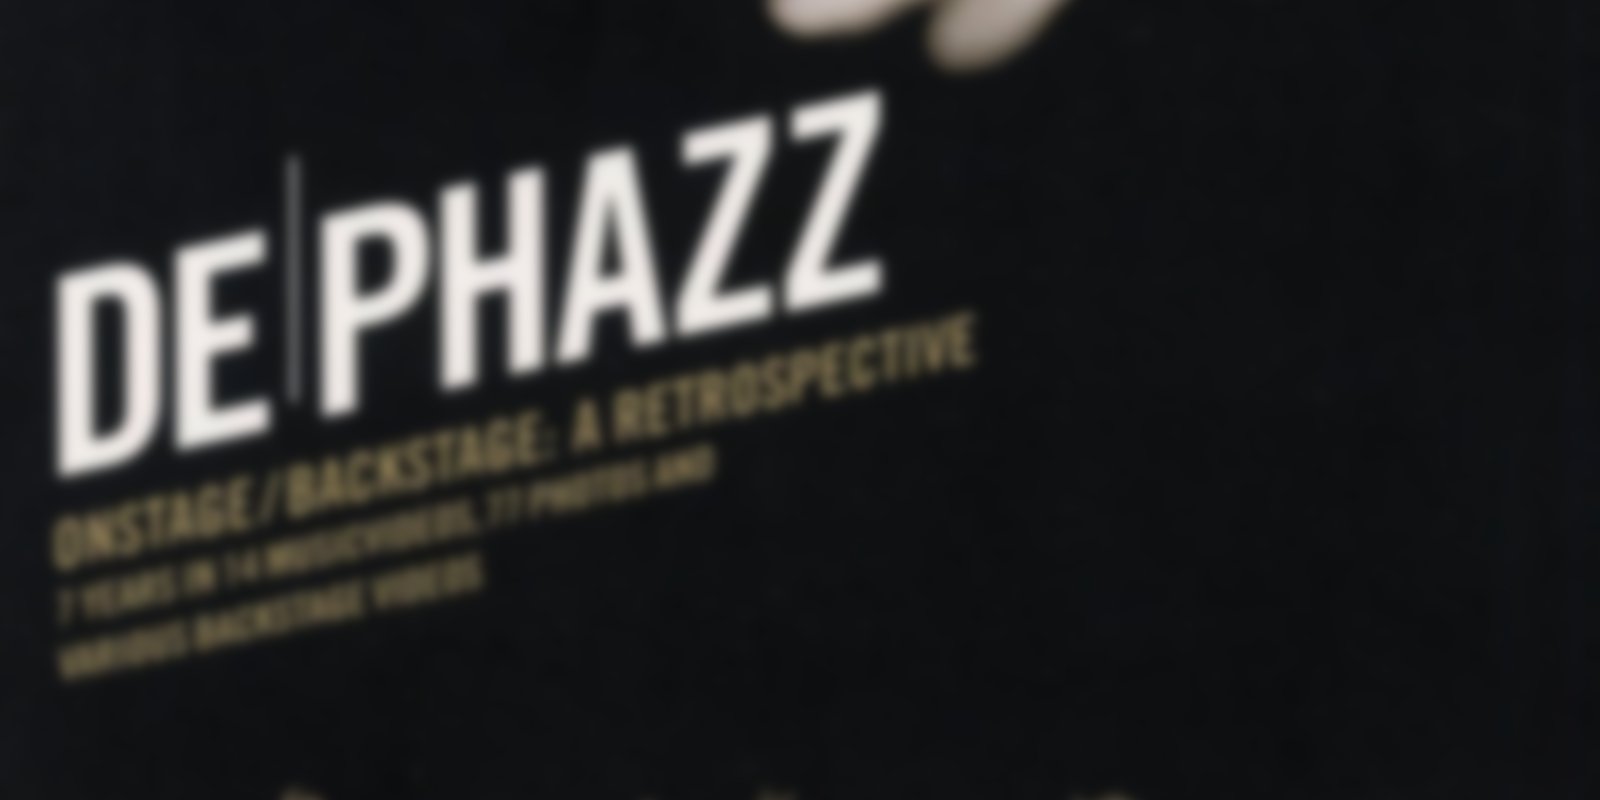 De Phazz - Onstage & Backstage: A Retrospective